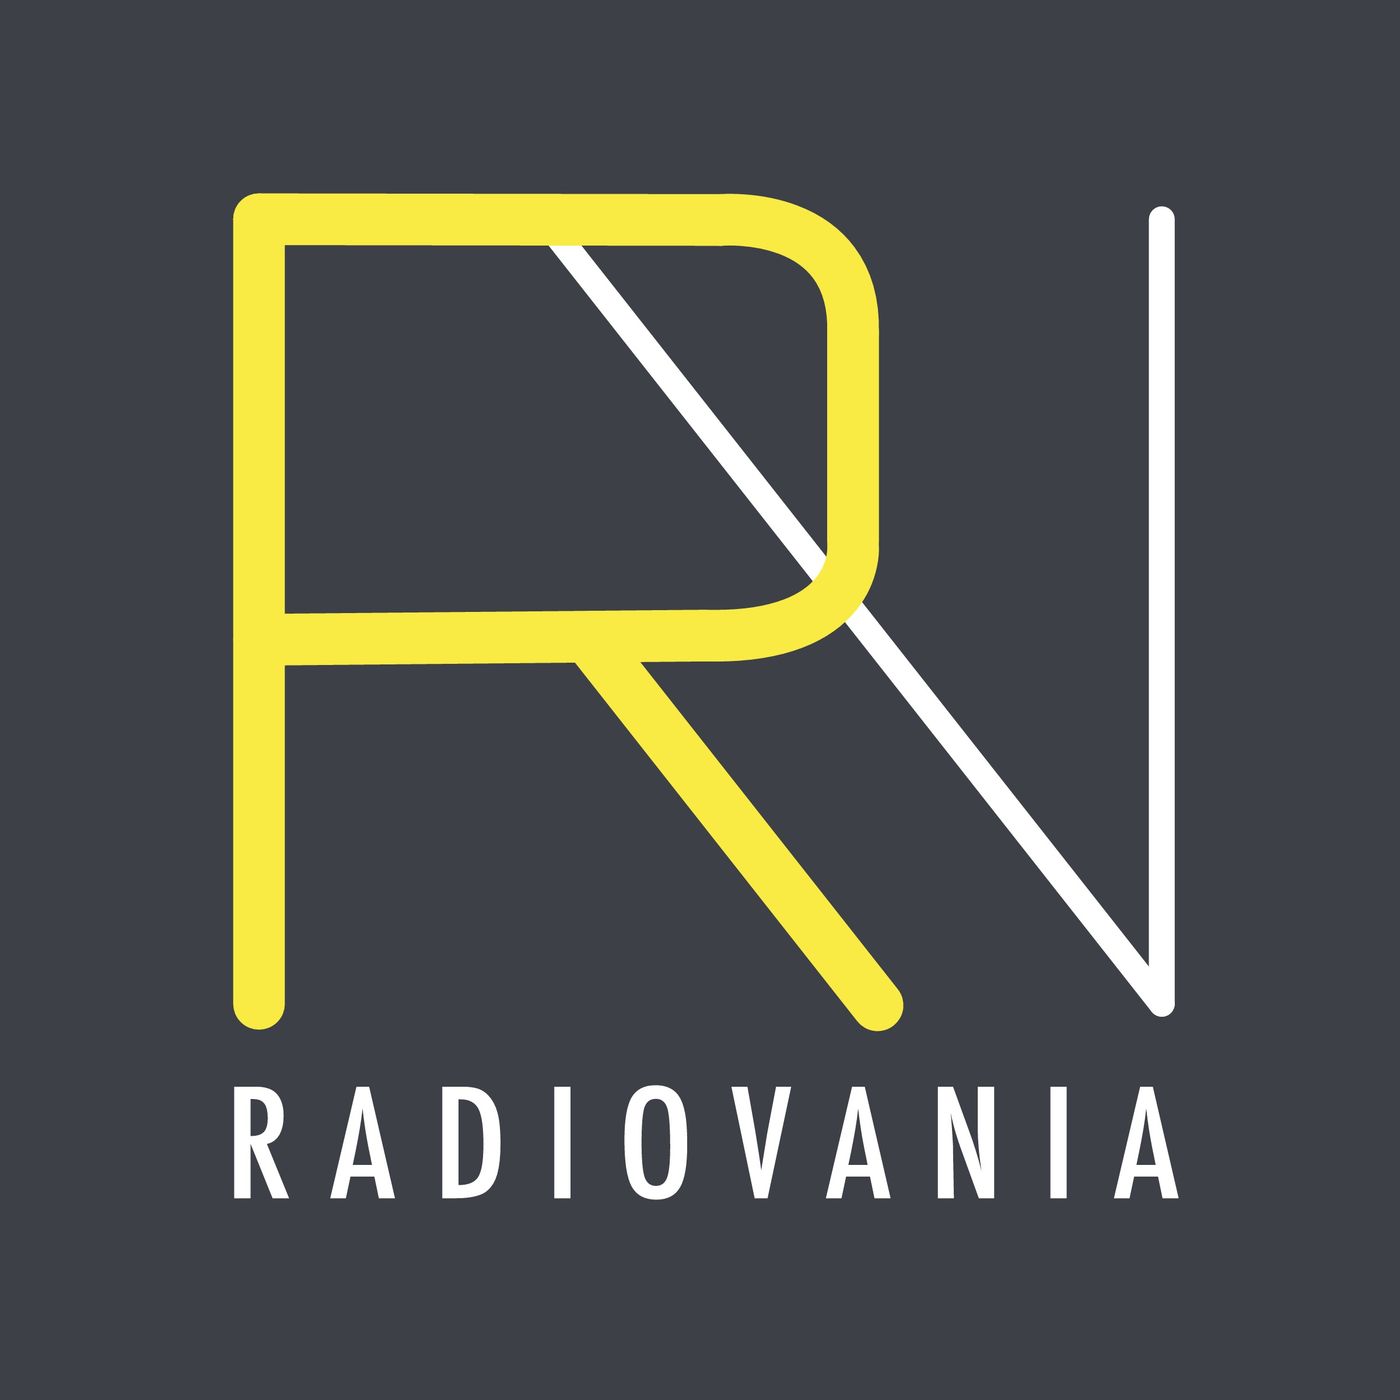 Radiovania